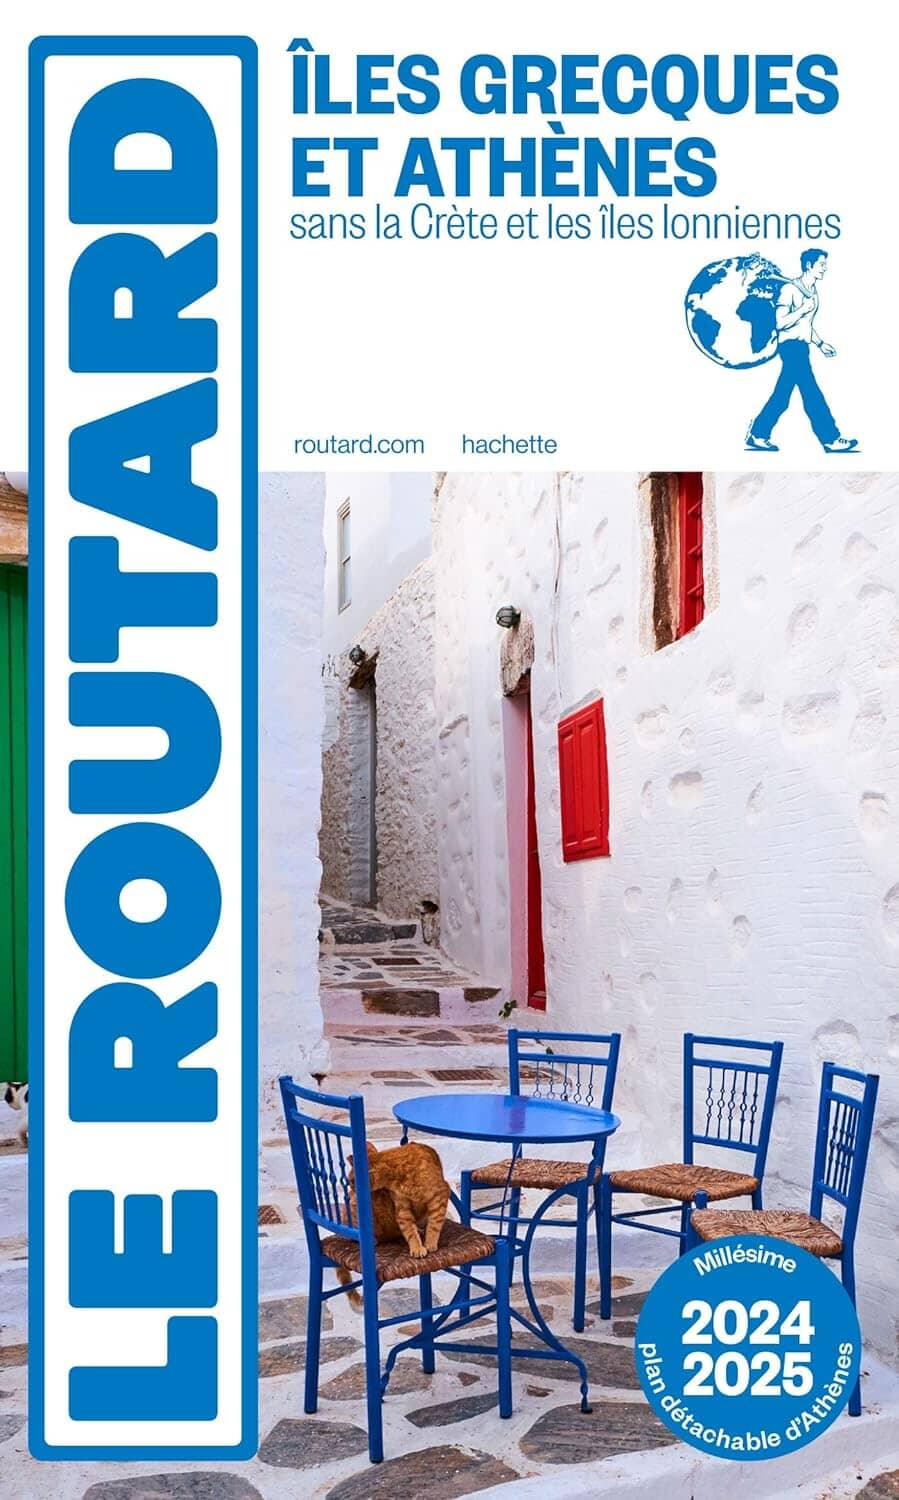 Guide du Routard - Iles grecques & Athènes 2024/25 | Hachette guide de voyage Hachette 